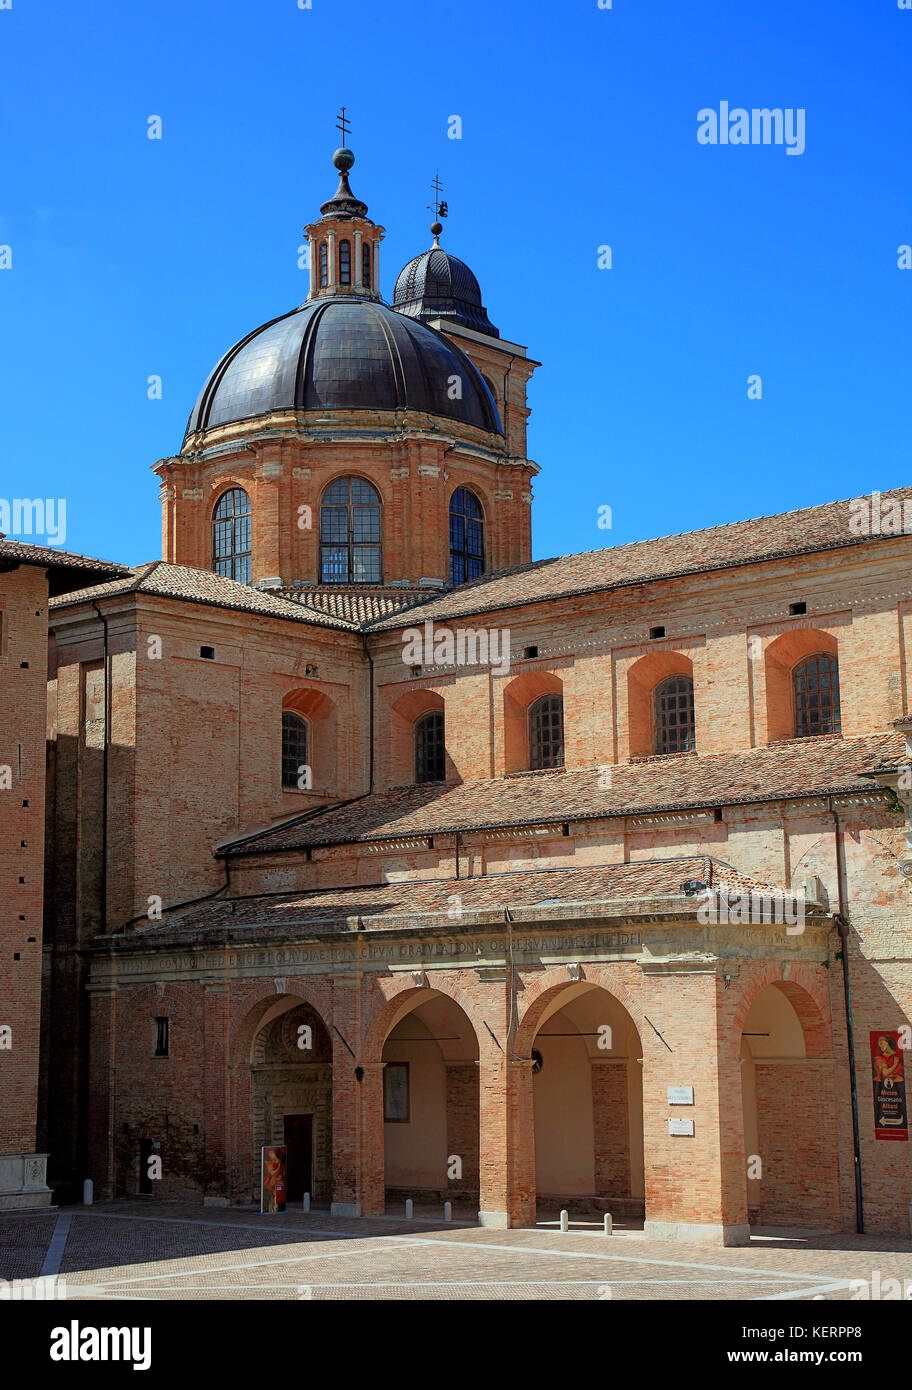 View of the Cathedral, Duomo di Urbino, Cattedrale Metropolitana di Santa Maria AssuntaDuomo, Urbino, Marche, Italy Stock Photo